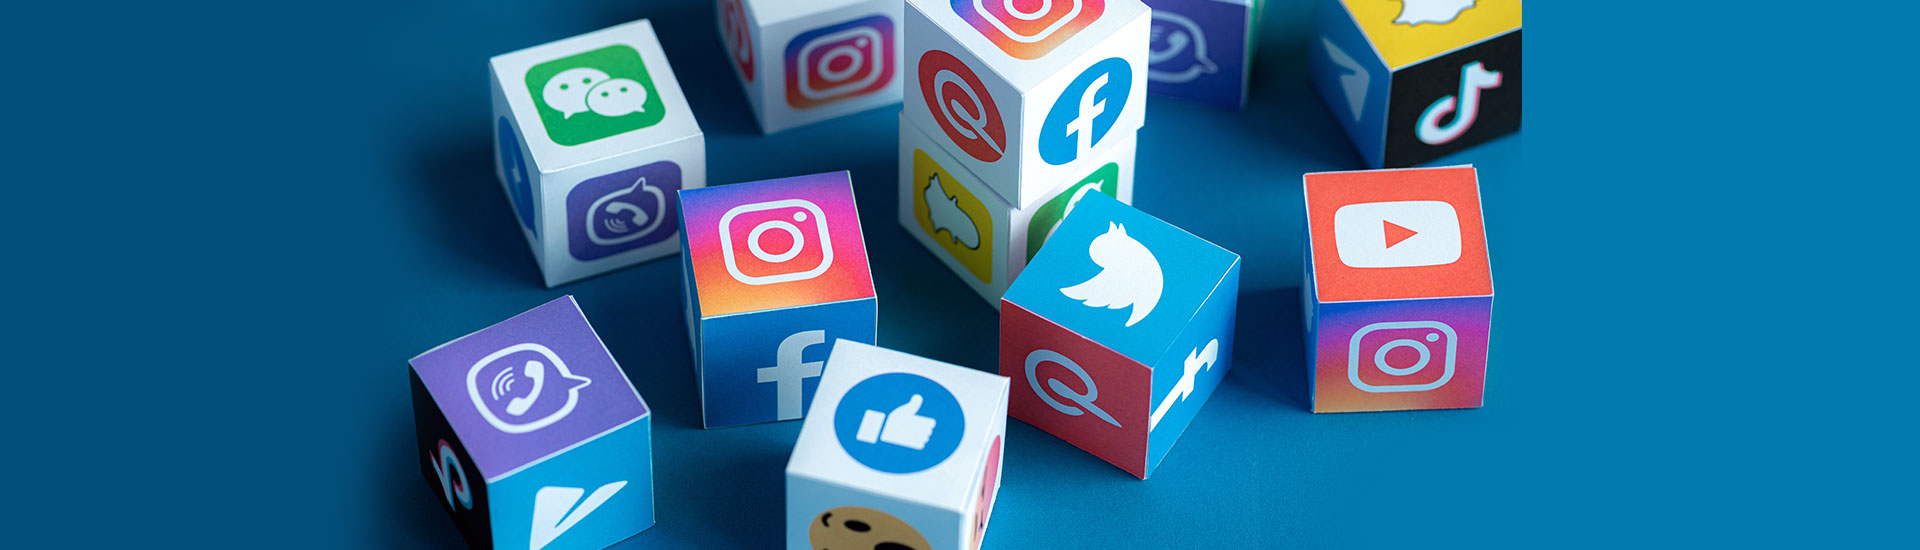 Ποια θα είναι τα Social Media Trends για το 2020